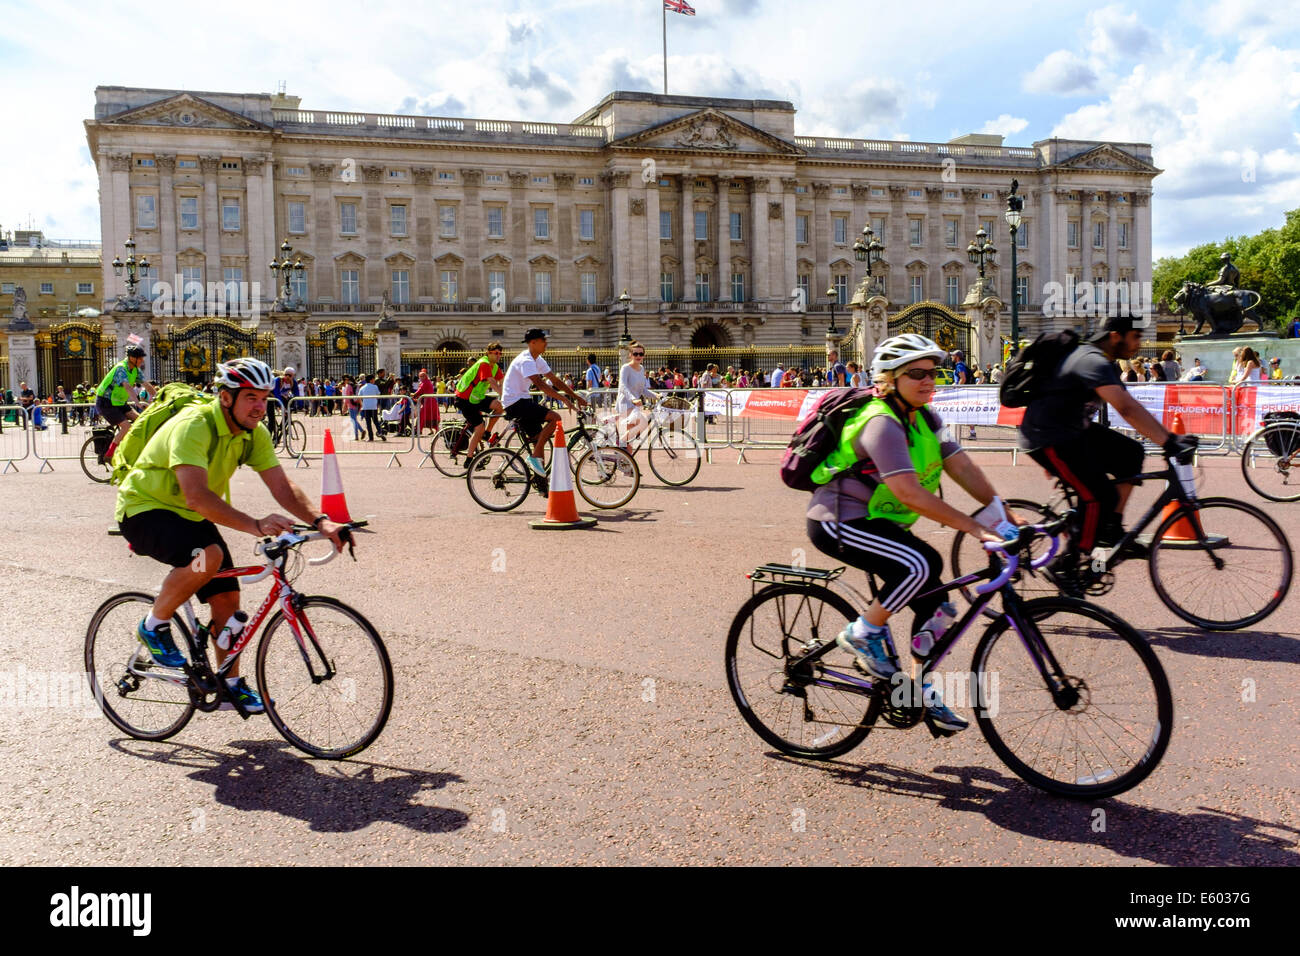 Los participantes en el evento Freecycle RideLondon prudenciales en el centro de Londres, el Palacio de Buckingham pasado ciclo Foto de stock